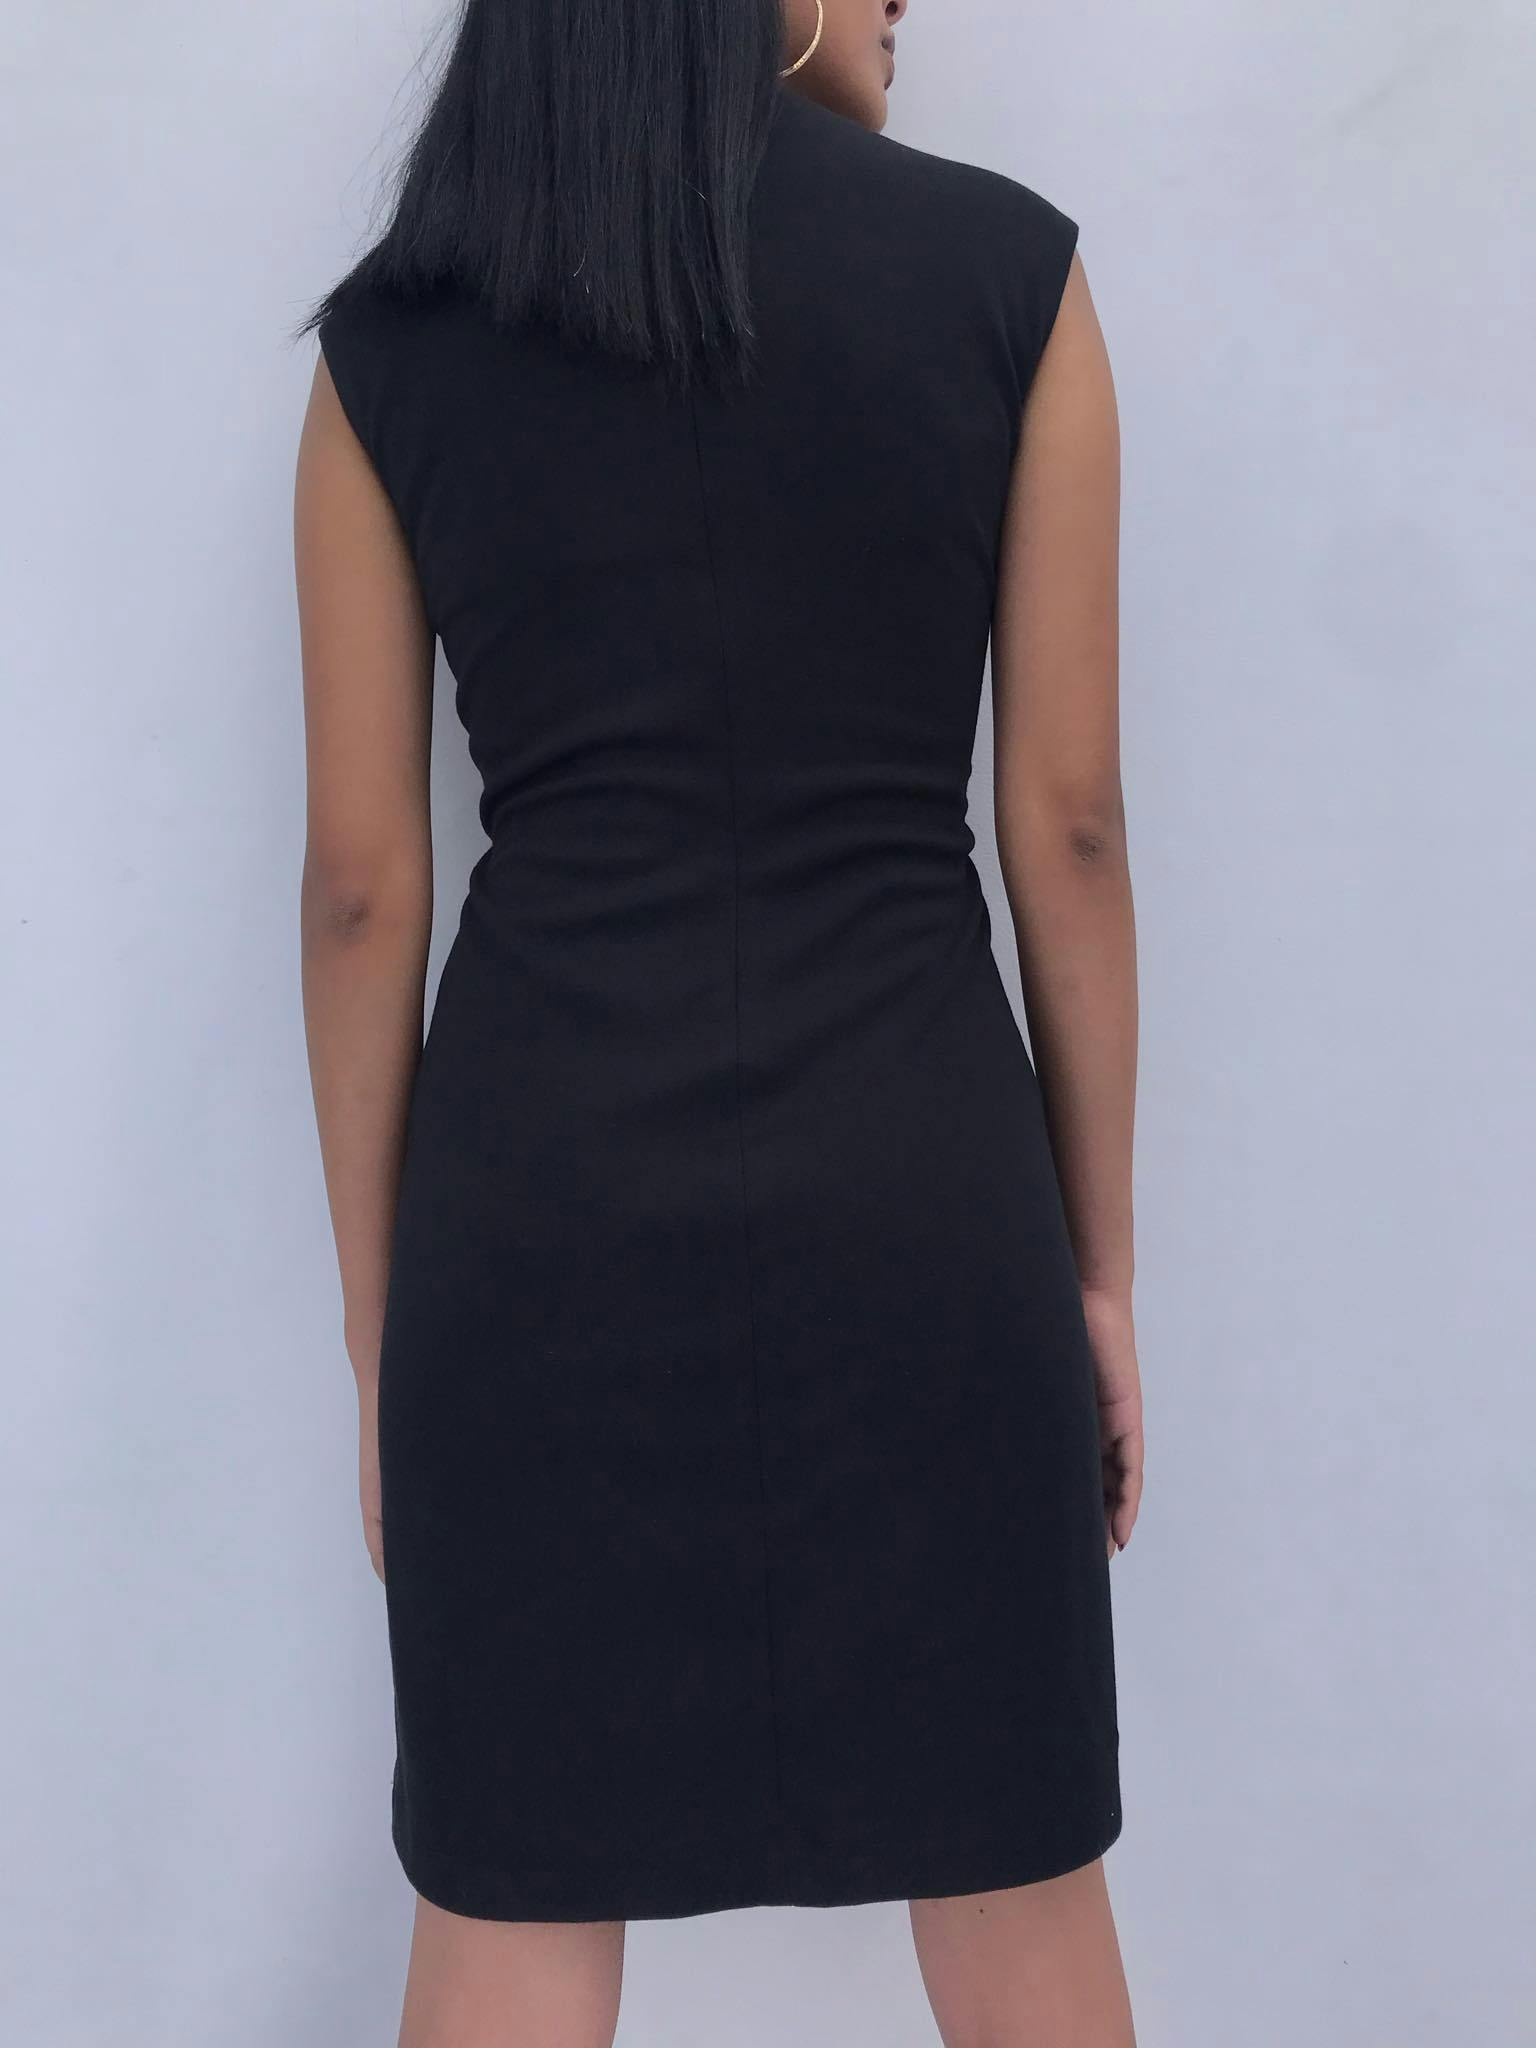 Vestido Ivanka Trump negro con estampado texturado azul delantero, manga cero y con cierre posterior.  Busto 100cm sin estirar Largo 90cm